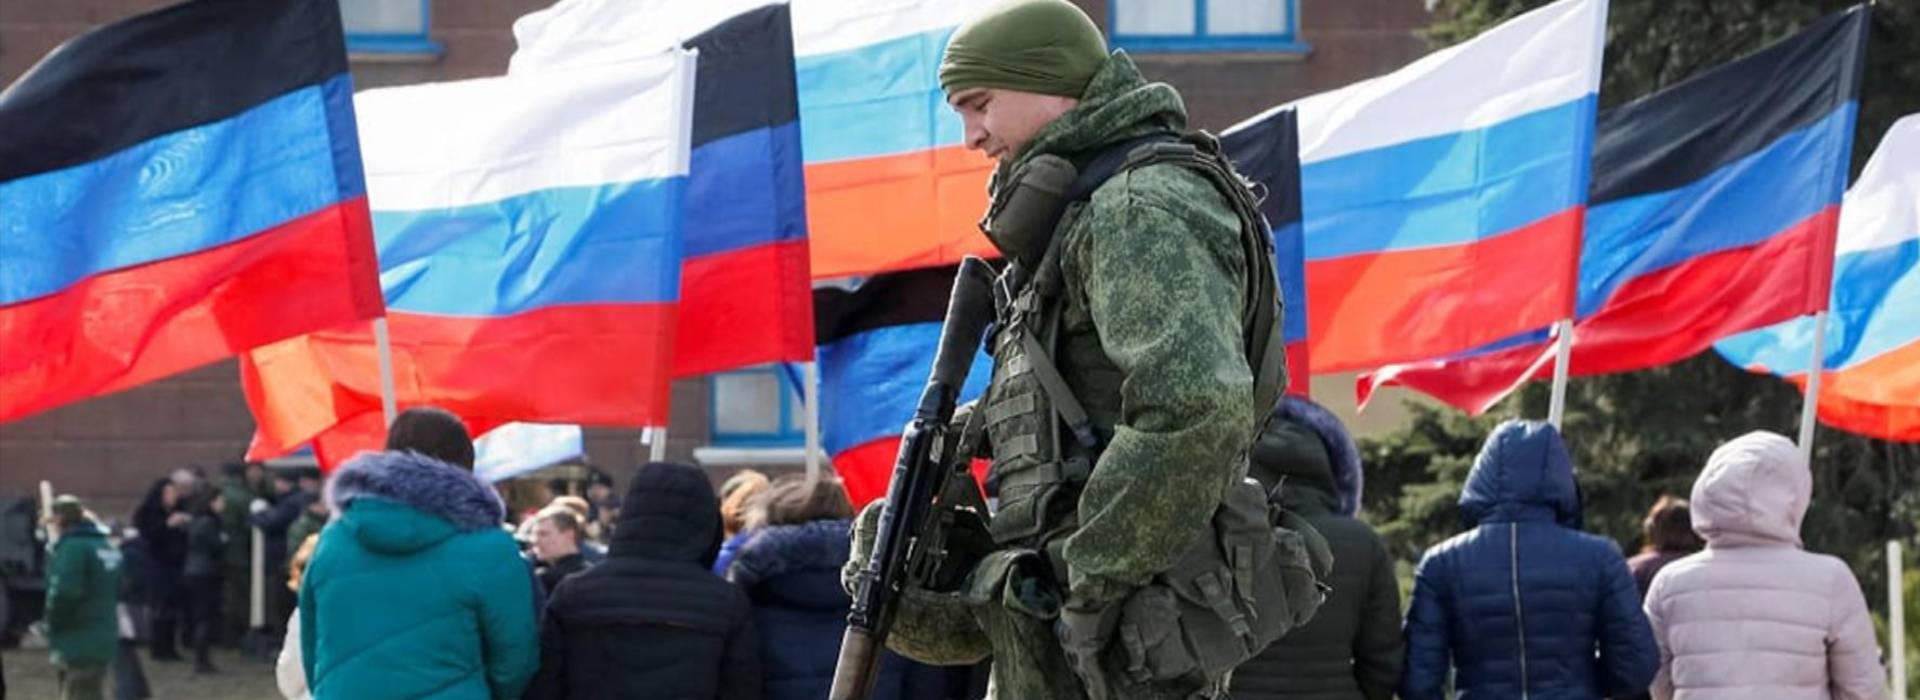 Perché il Donbass è al centro della crisi Ucraina?